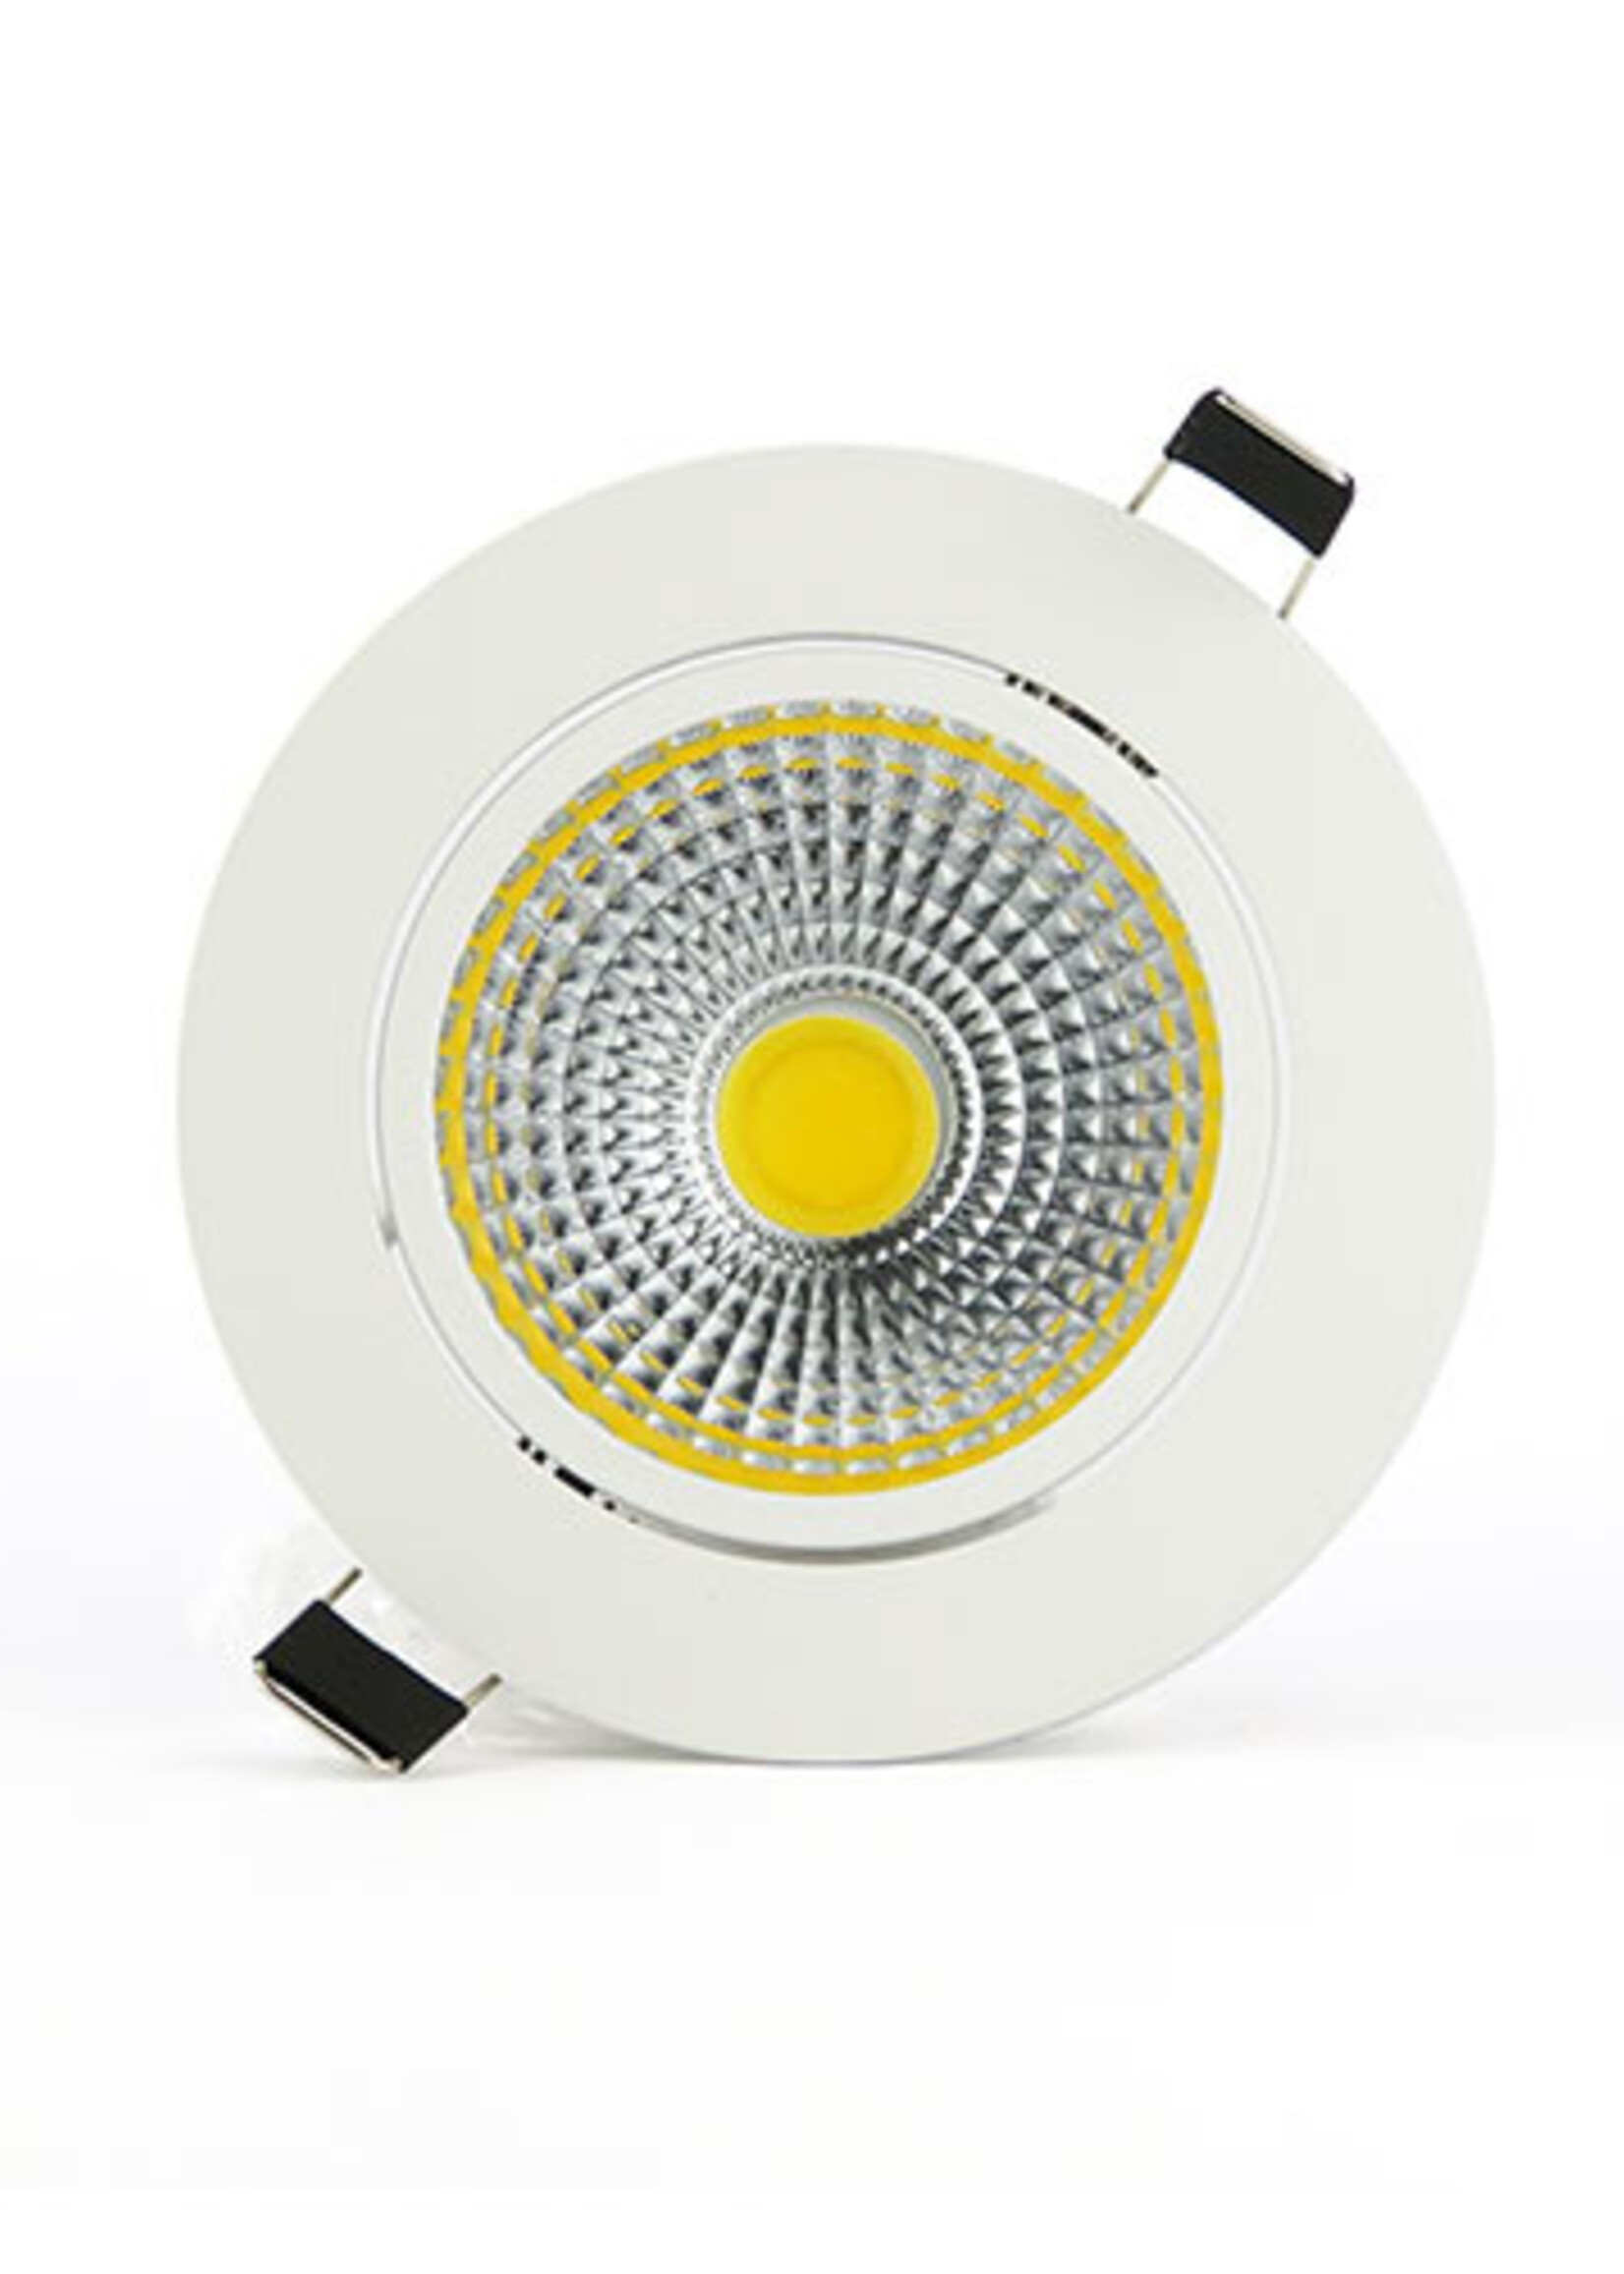 LEDWINKEL-Online LED Inbouwspot 7W ⌀110mm kantelbaar